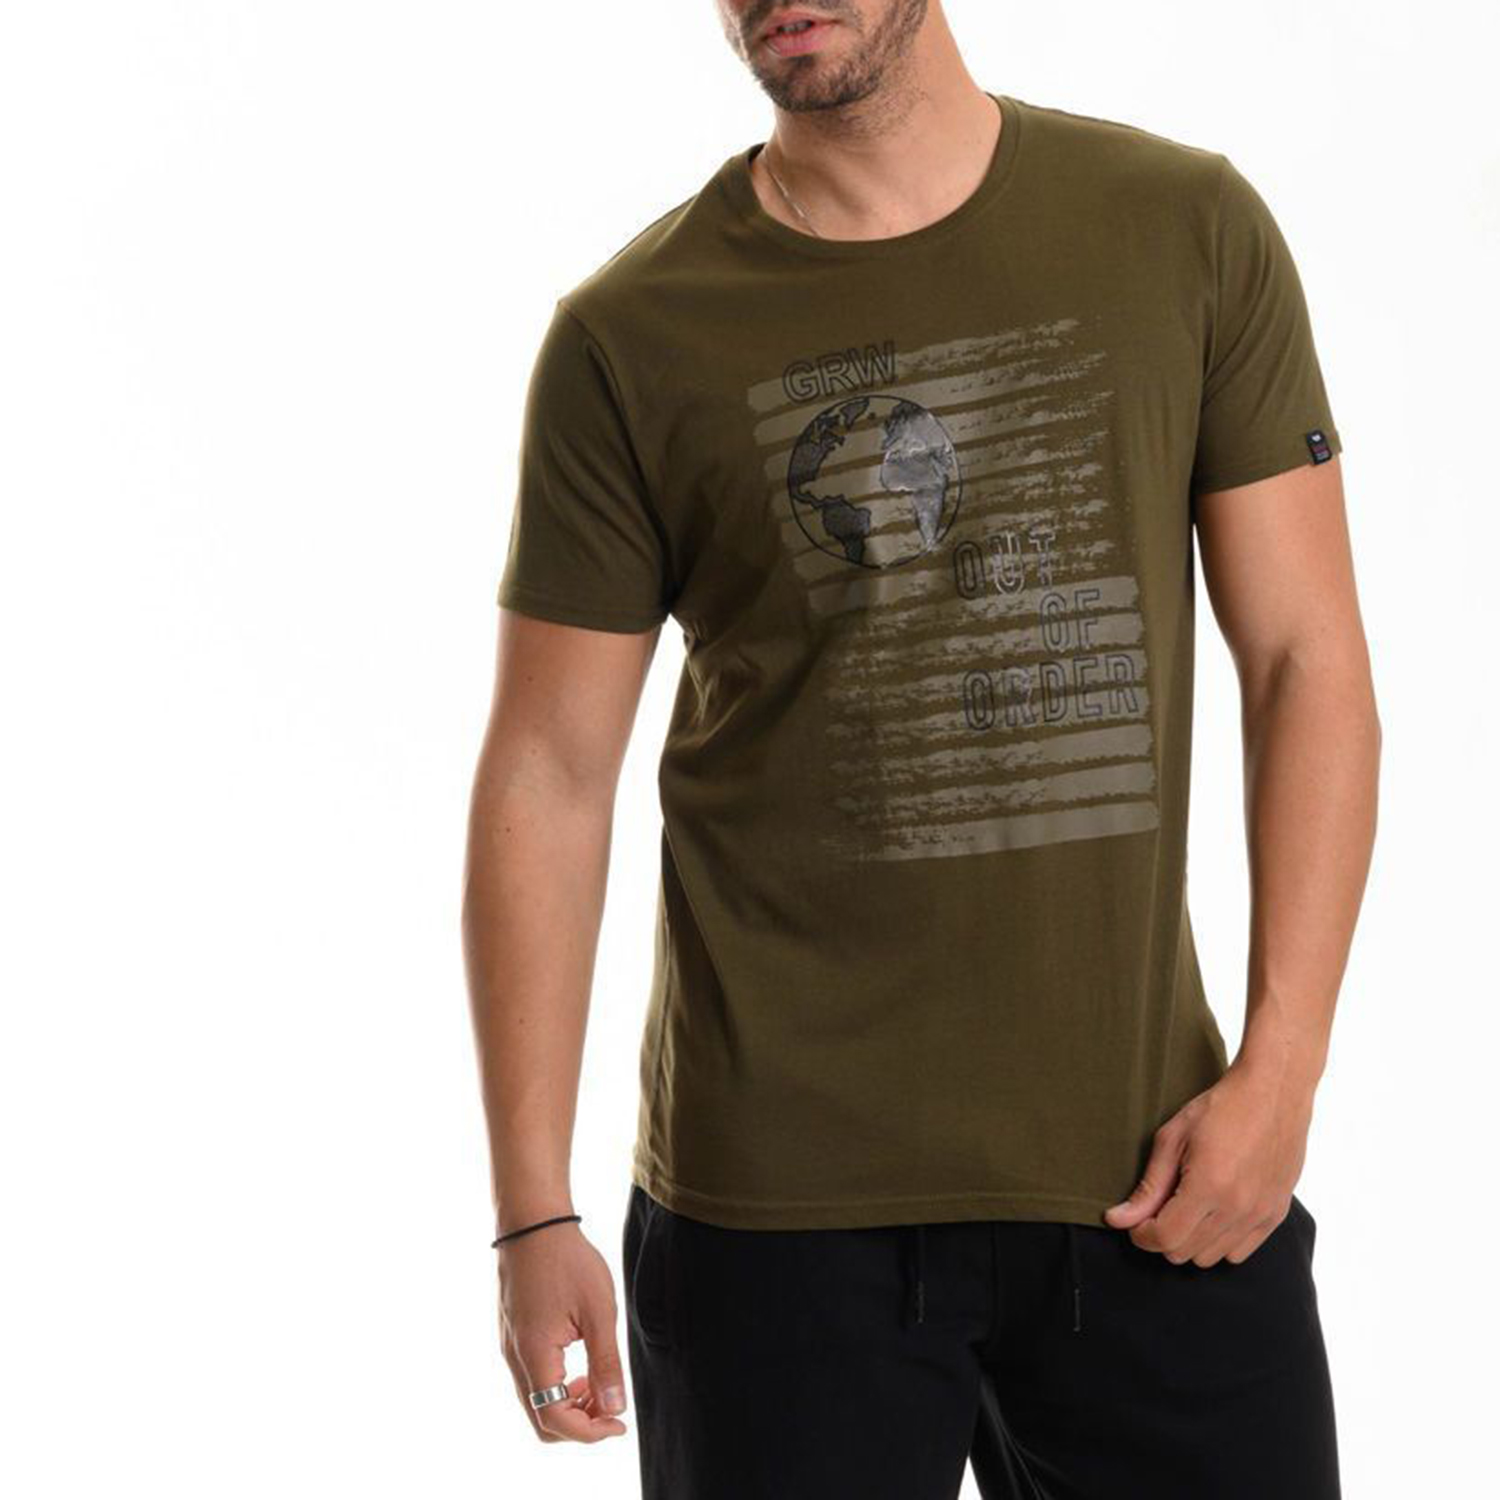 Ανδρικά/Ρούχα/Μπλούζες/Κοντομάνικες GREENWOOD - Ανδρικό t-shirt GREENWOOD λαδί